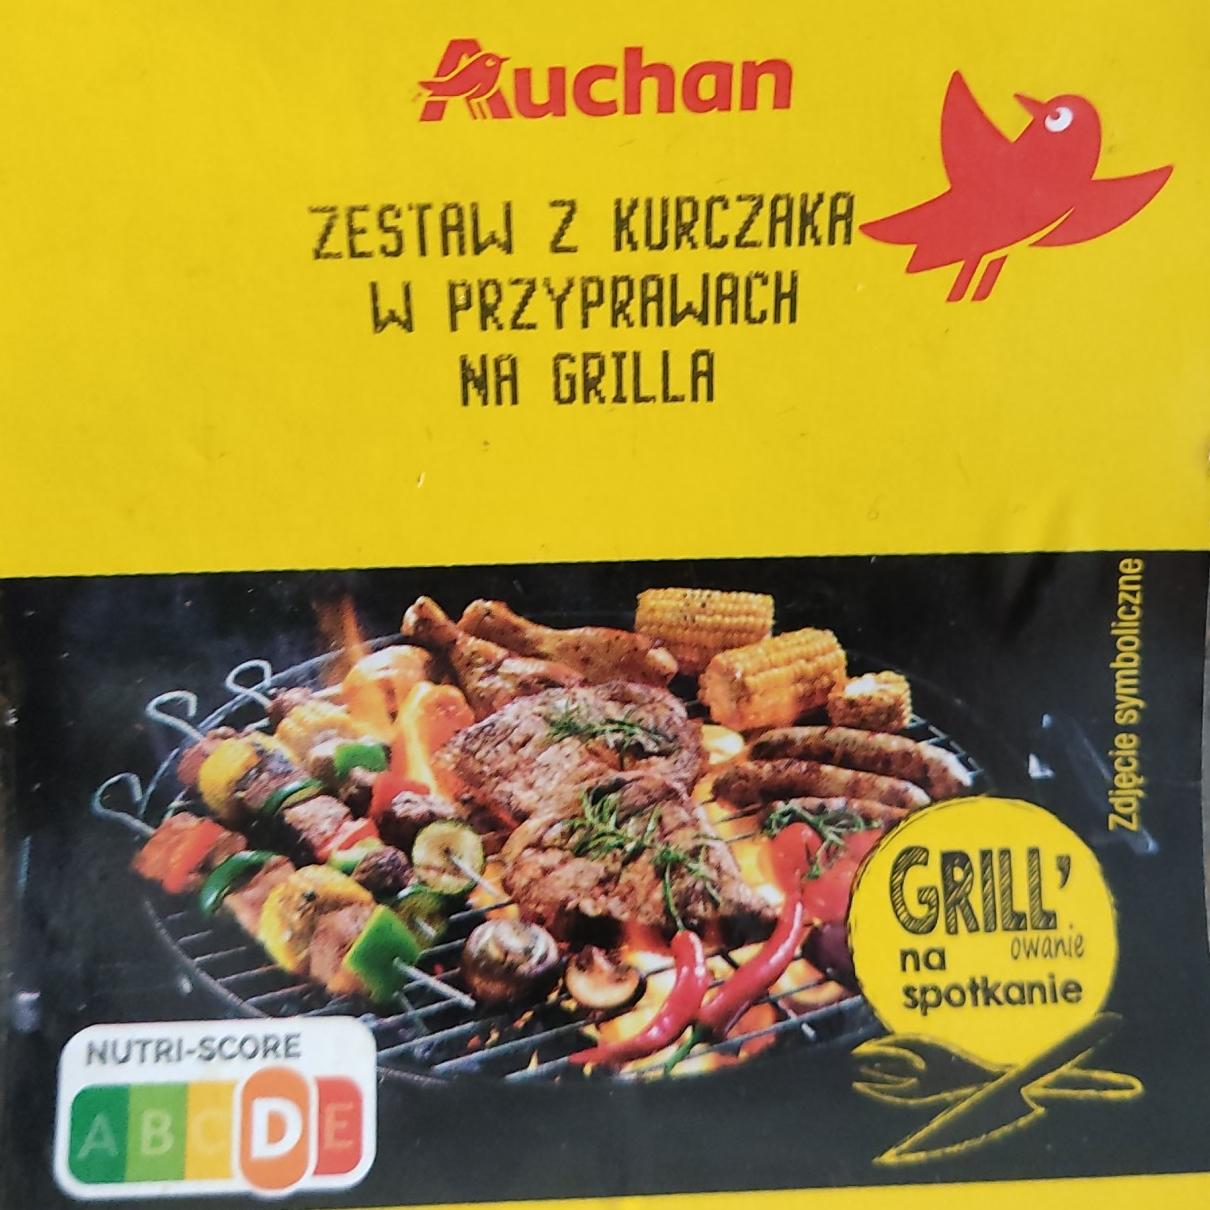 Фото - Zestaw z Kurczaka w przyprawach na grilla Auchan